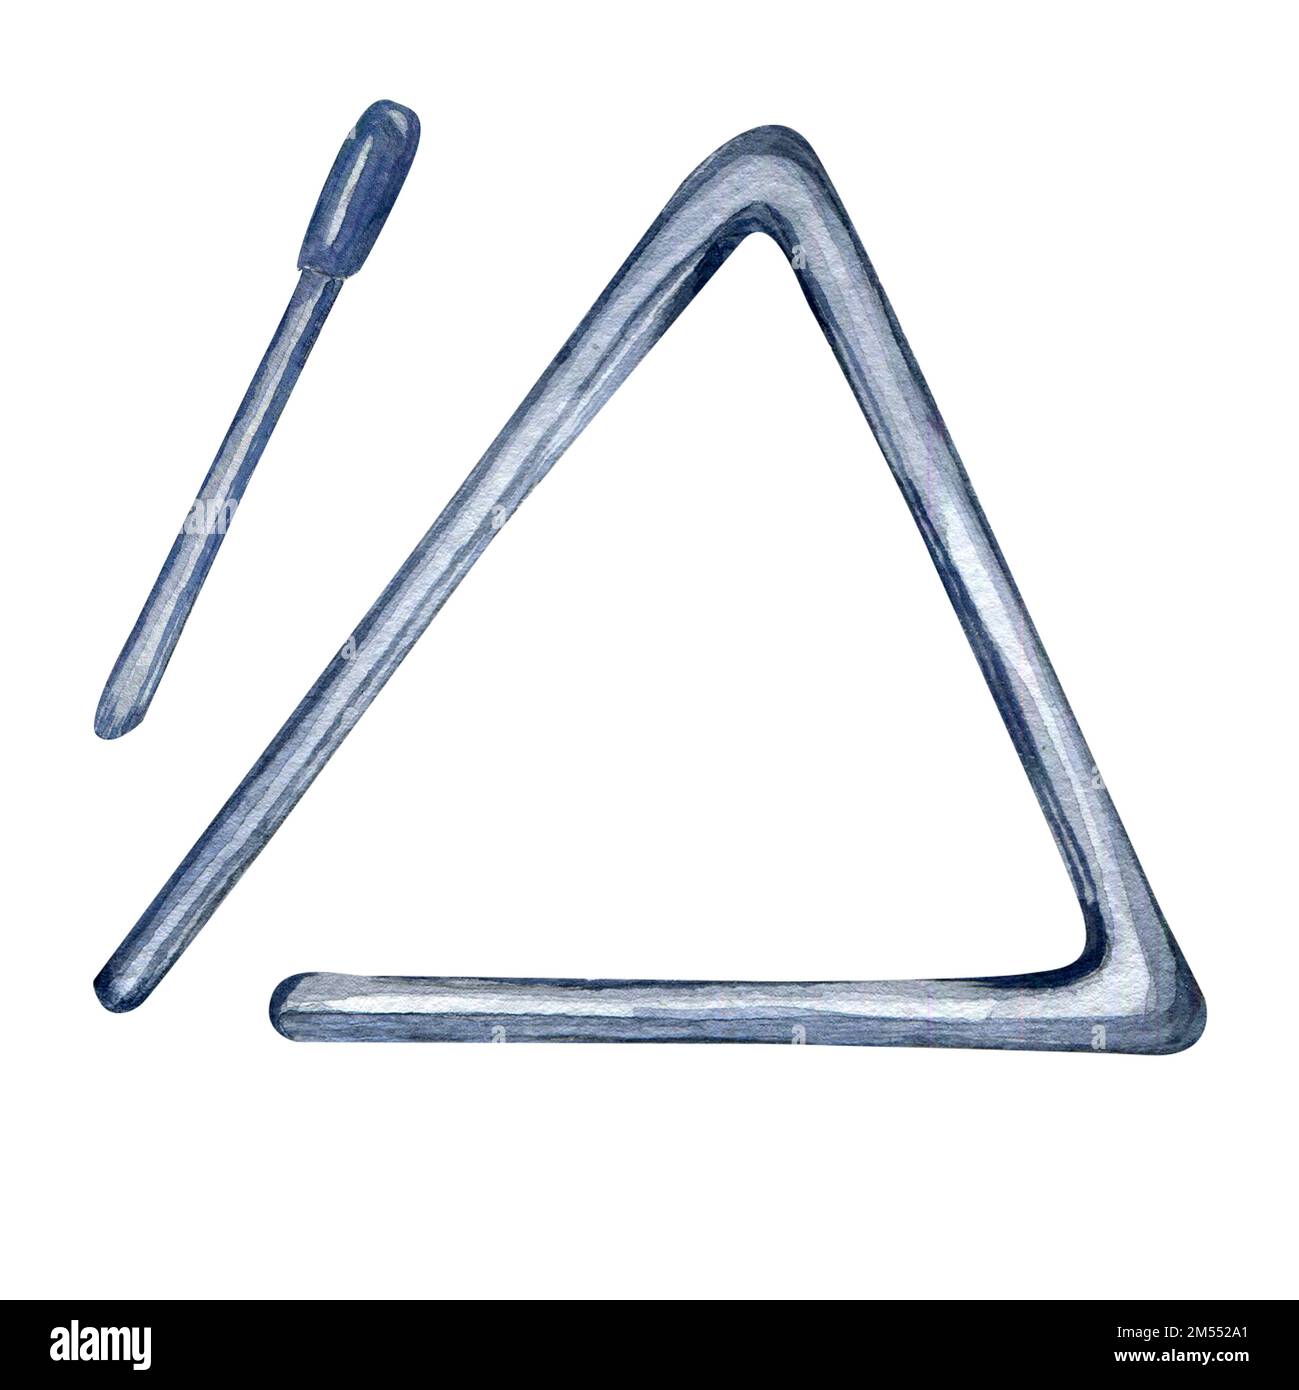 Dreieck-Perkussion Musikinstrument Aquarell-Darstellung isoliert. Das Geräusch eines handbemalten Metallinstruments. Designelement für Verpackung, Postkarte Stockfoto